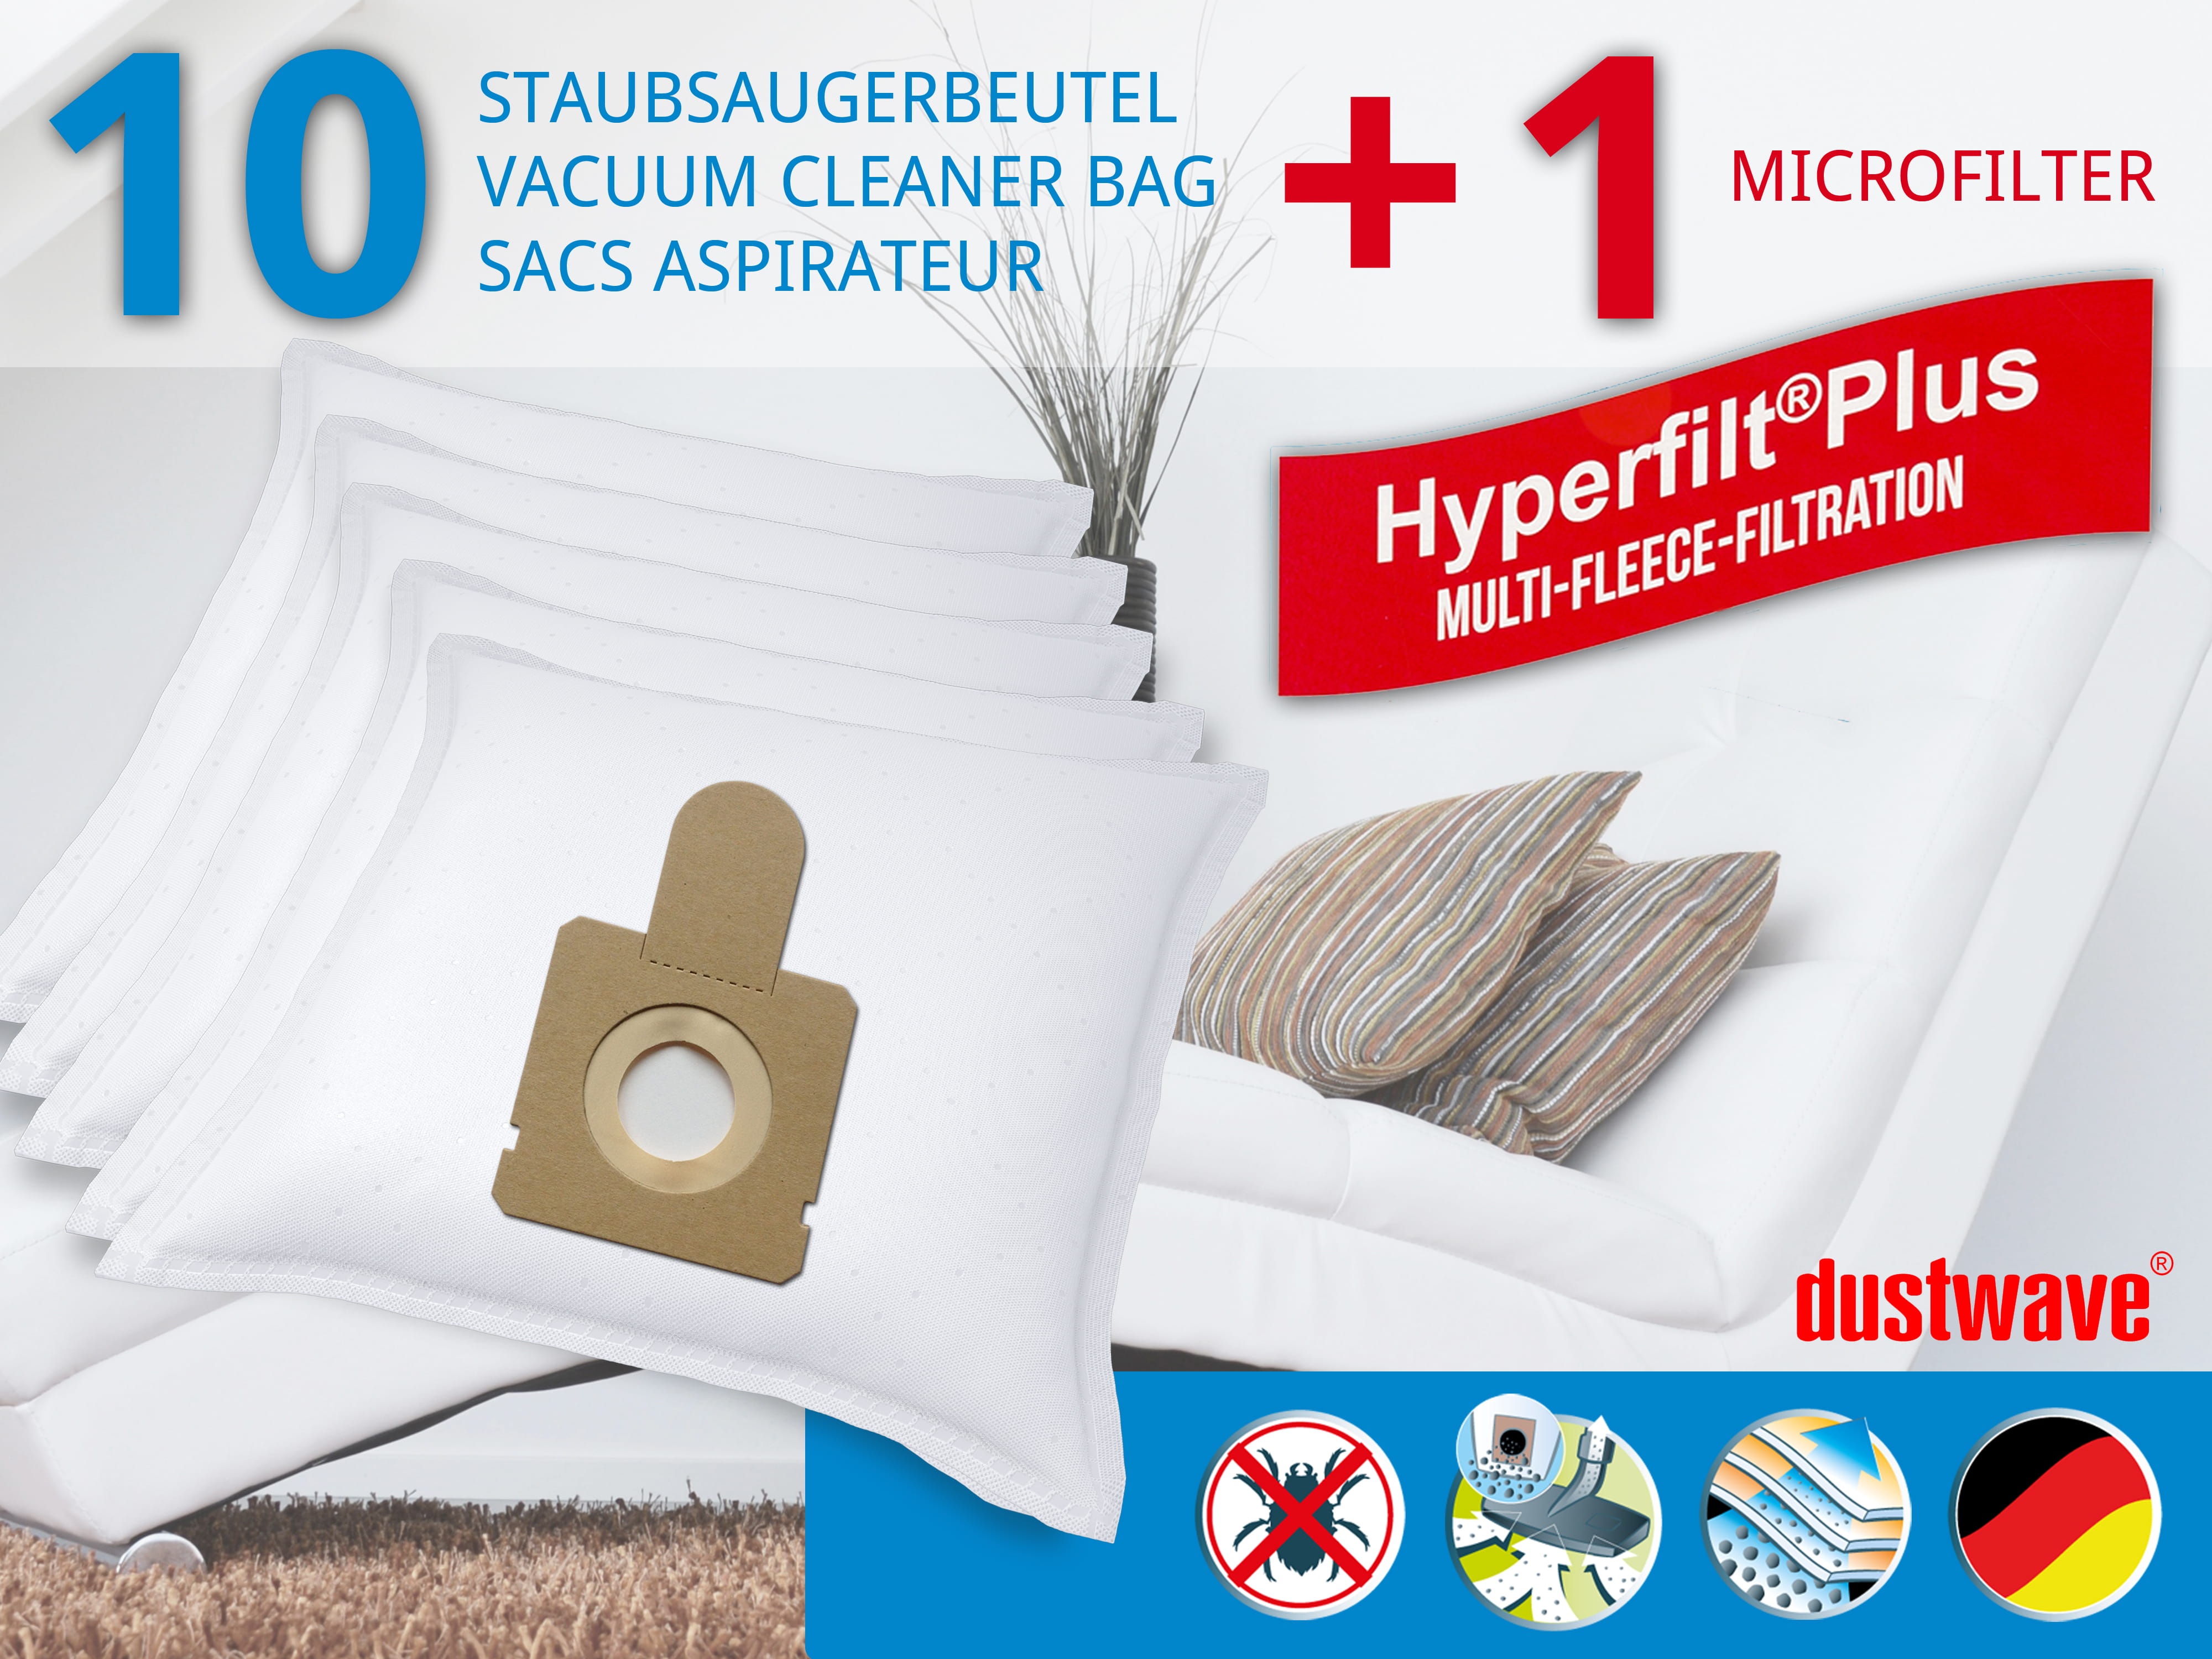 Dustwave® 10 Staubsaugerbeutel für Hoover TFS 7100... FreeSpace - hocheffizient, mehrlagiges Mikrovlies mit Hygieneverschluss - Made in Germany